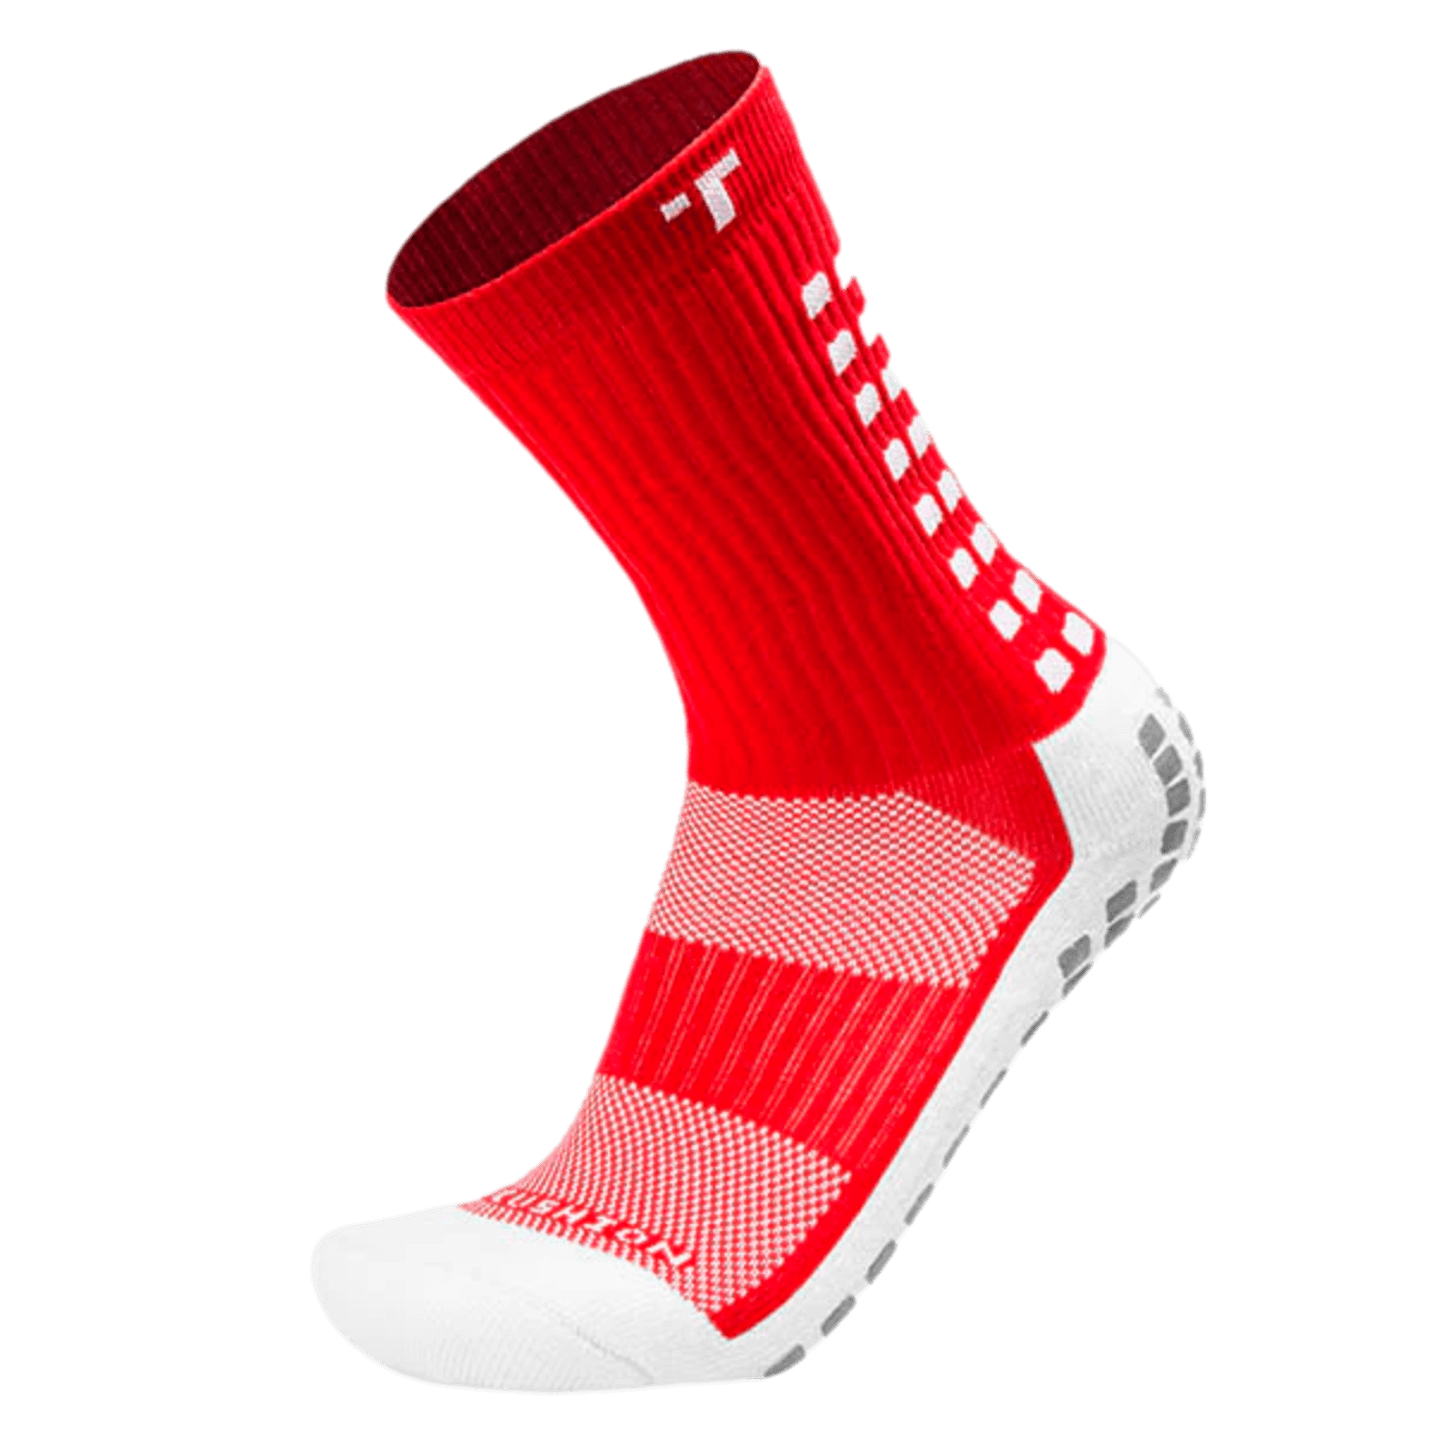 Trusox 3.0 Cushioned Mid Calf Grip Crew Socks